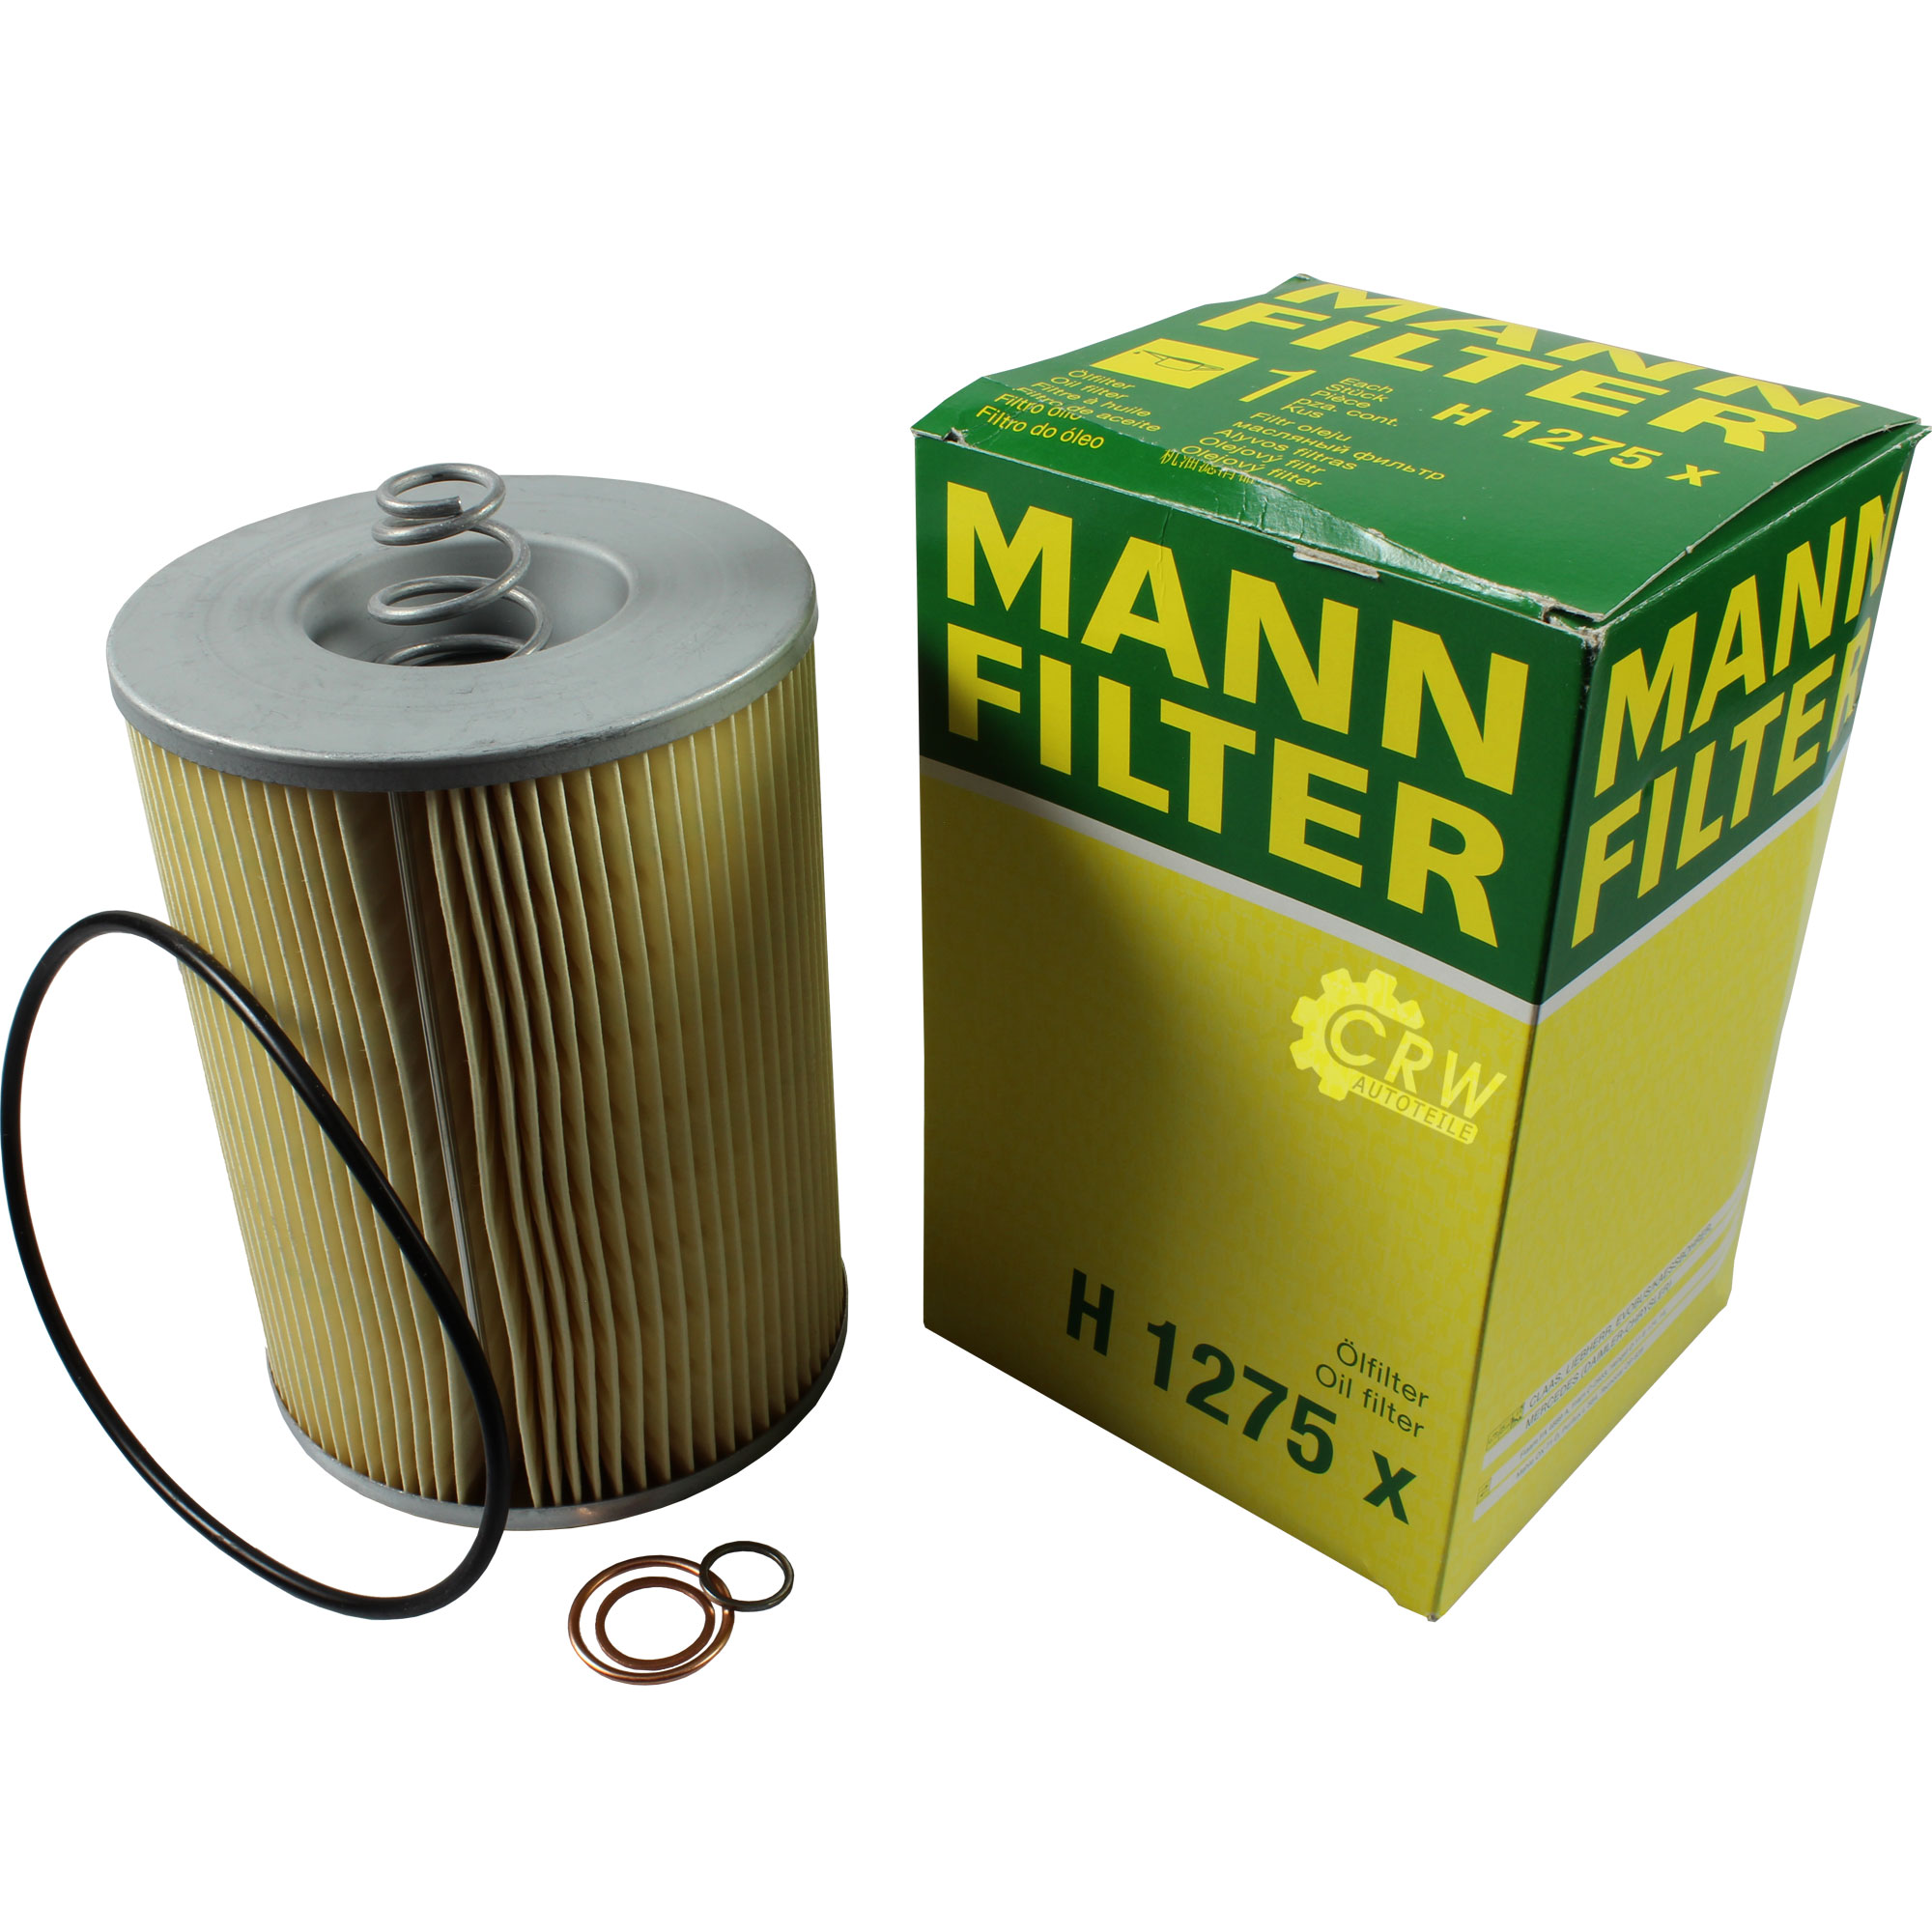 MANN-FILTER ÖlFILTER für Arbeitshydraulik H 1275 x